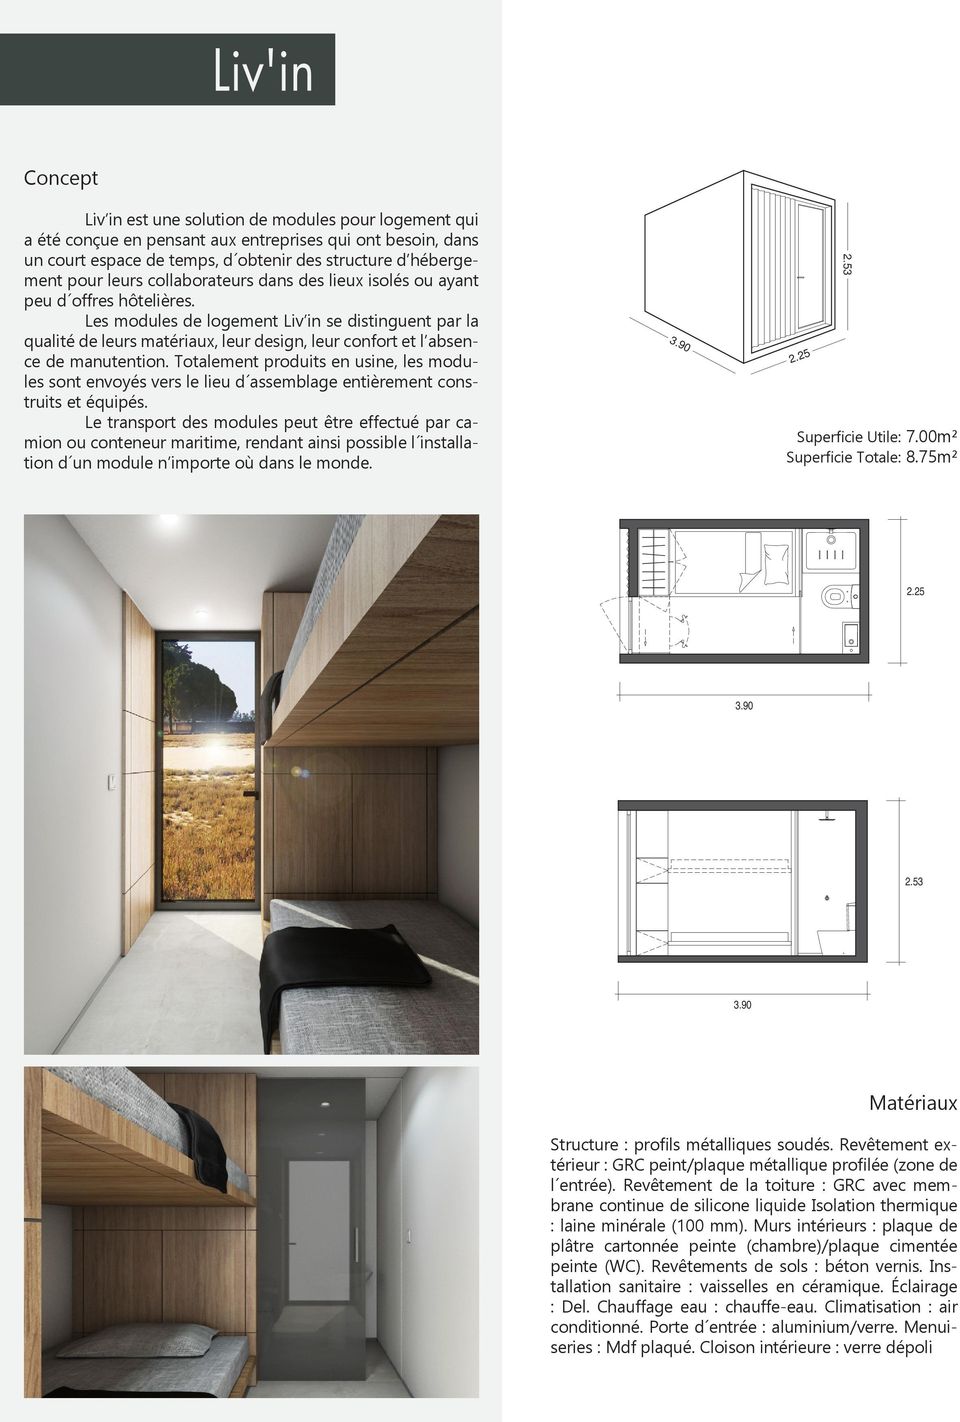 Les modules de logement Liv in se distinguent par la qualité de leurs matériaux, leur design, leur confort et l absence de manutention.